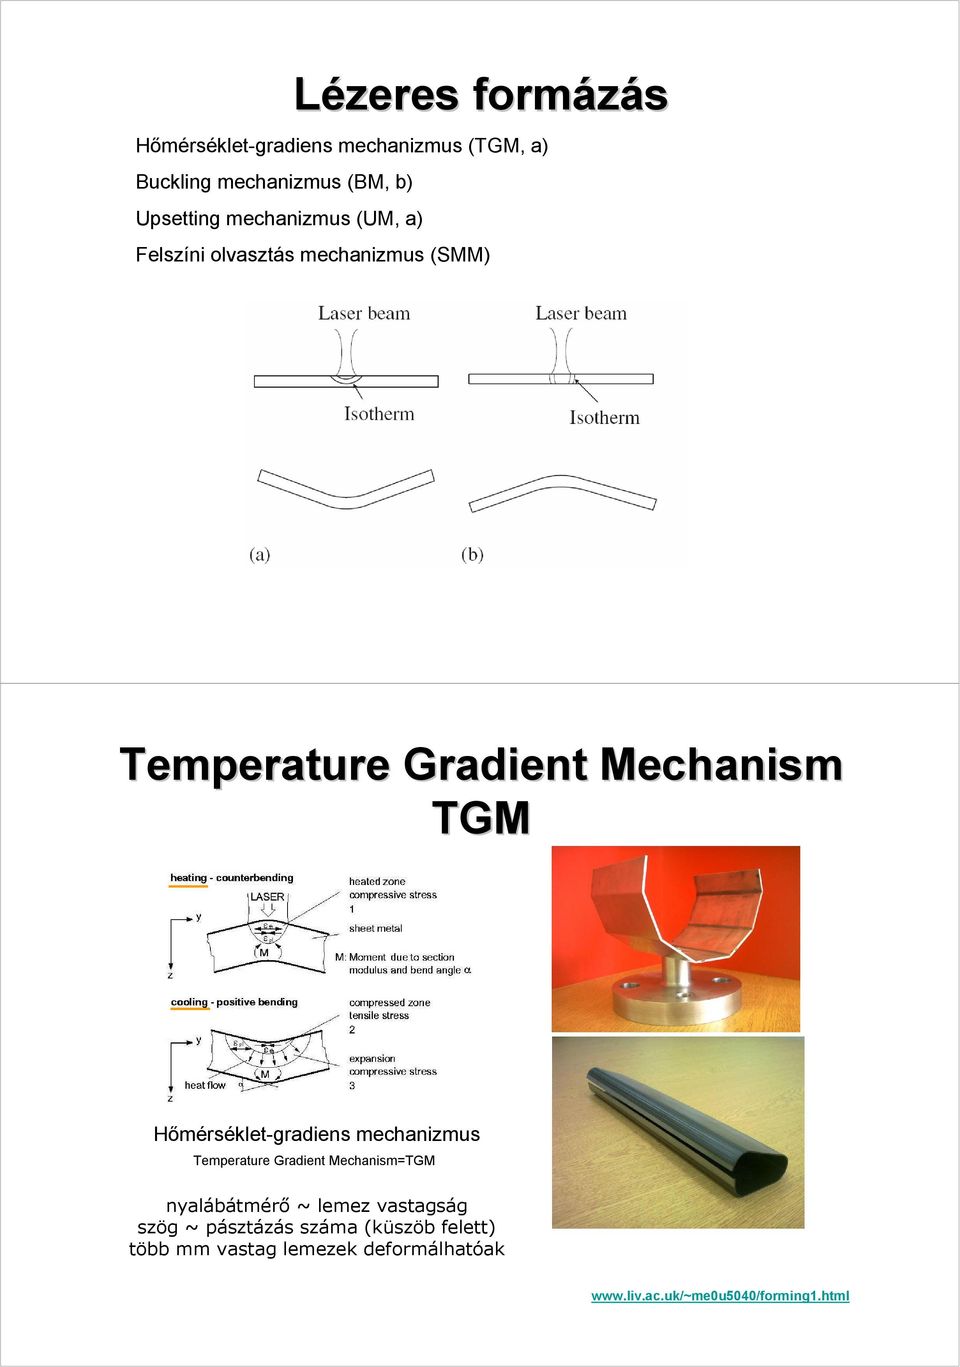 Hőmérséklet-gradiens mechanizmus Temperature Gradient Mechanism=TGM nyalábátmérő ~ lemez vastagság